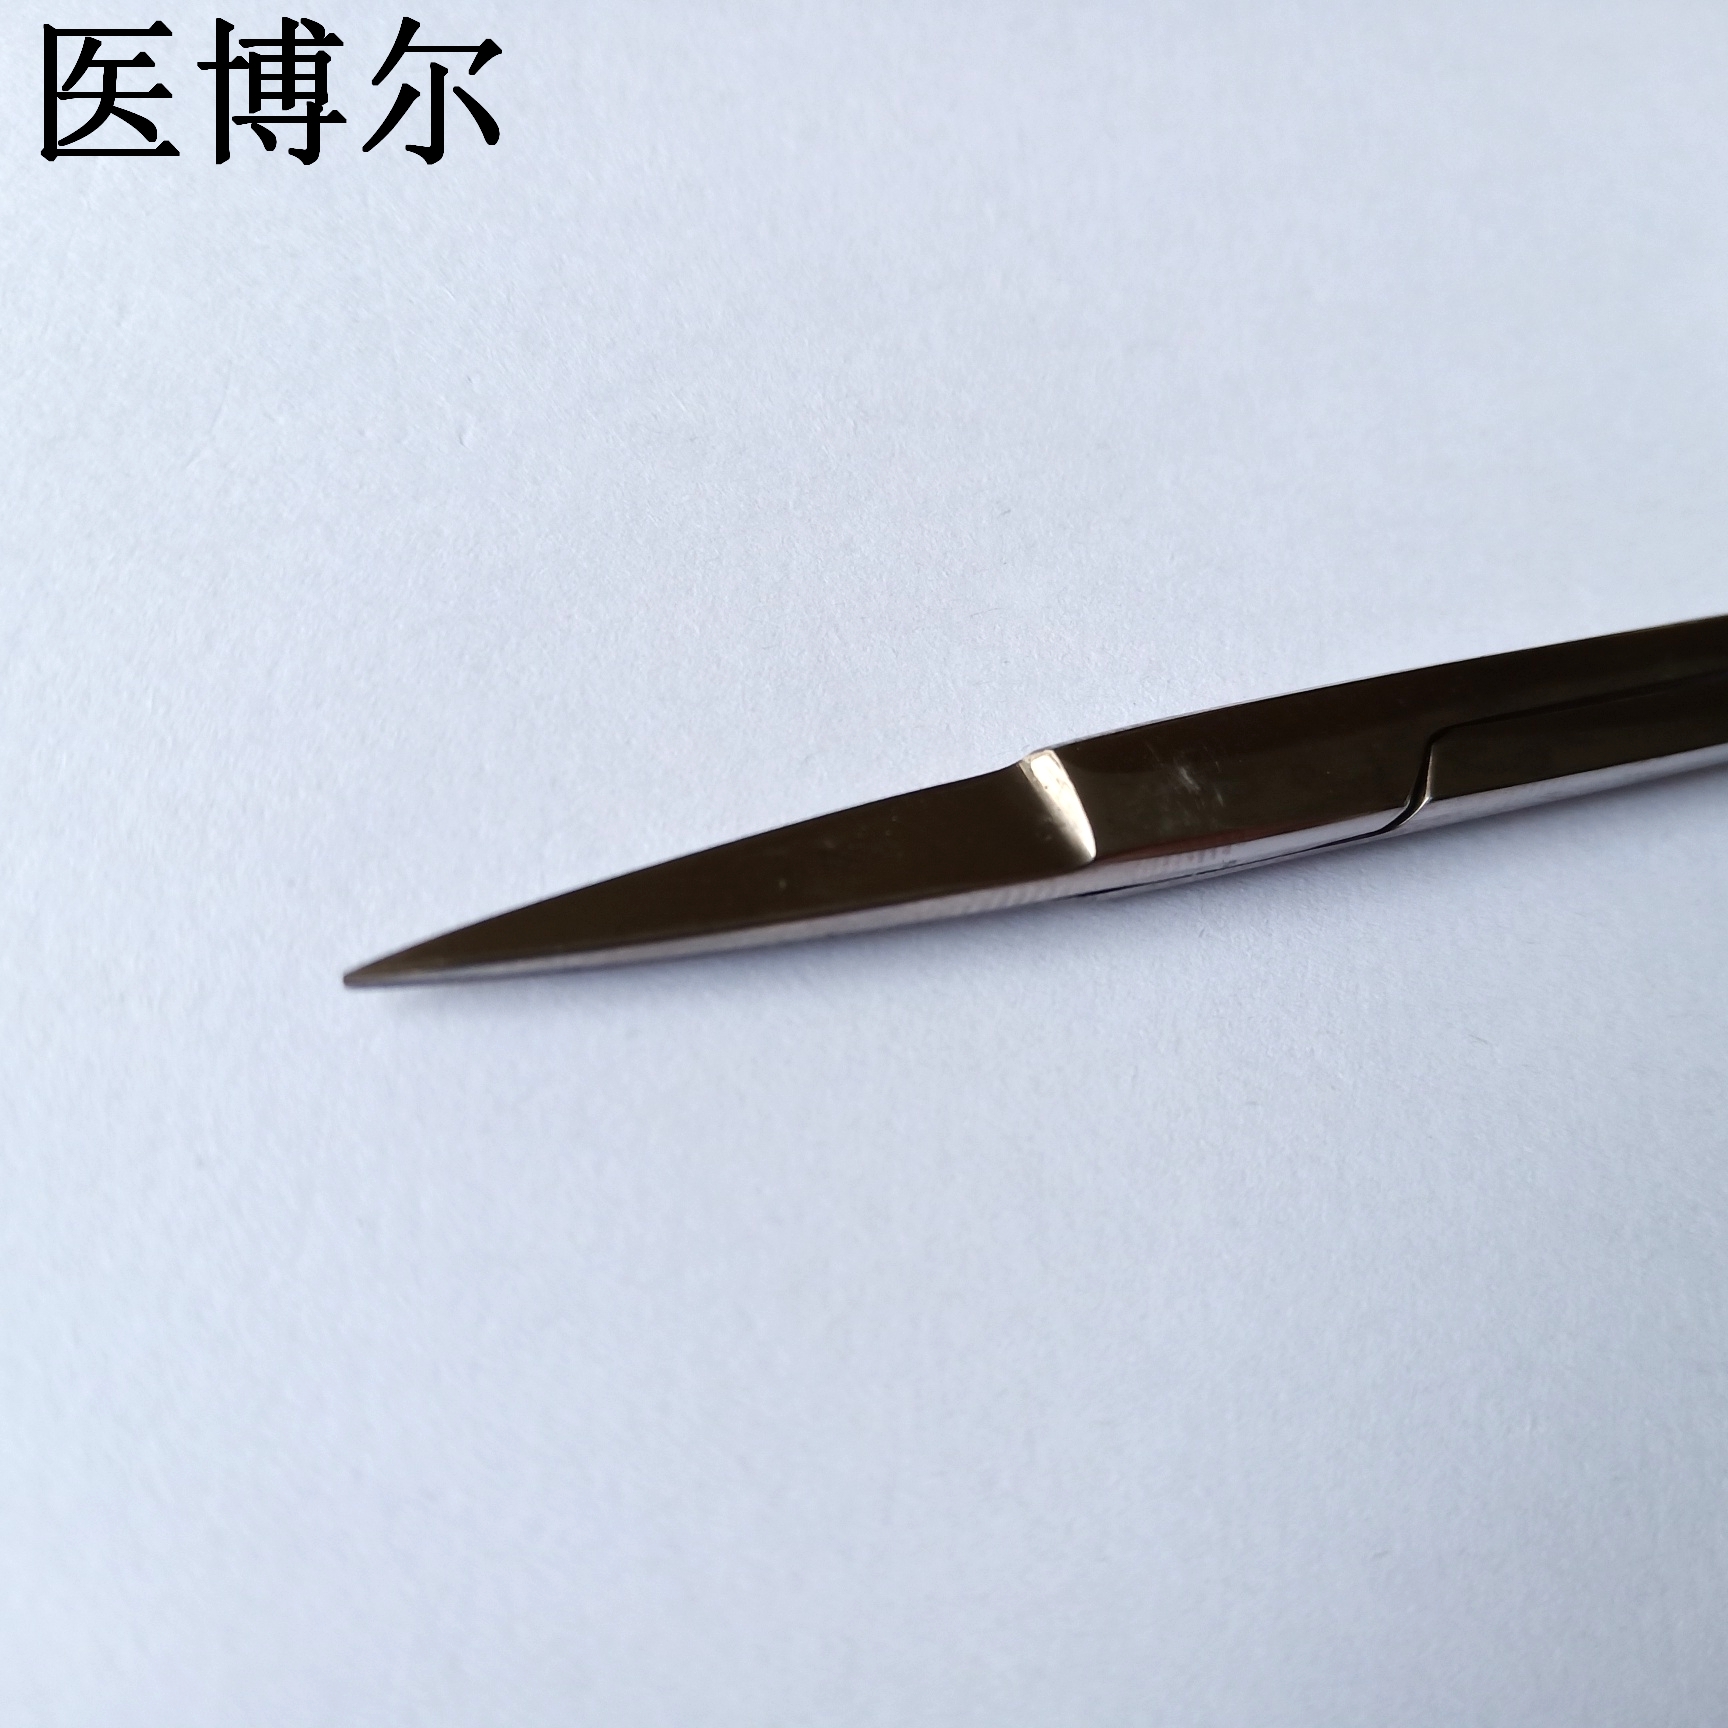 11.5cm板材剪刀 (5)_看图王.jpg